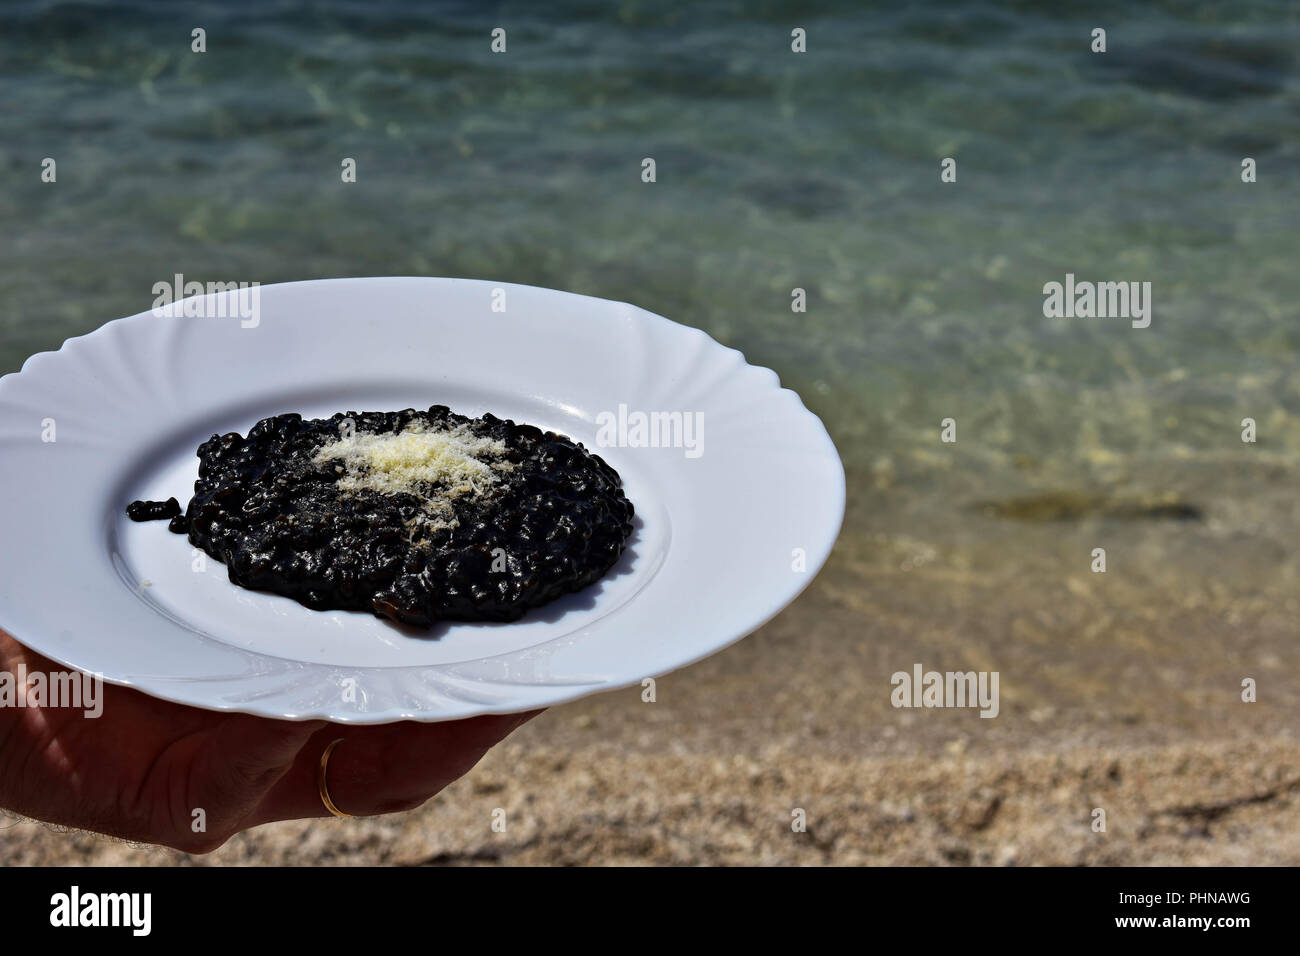 Nero deliziosi risotti serviti dal mare/ cameriere tenendo la piastra del risotto nero / cucina mediterranea Foto Stock